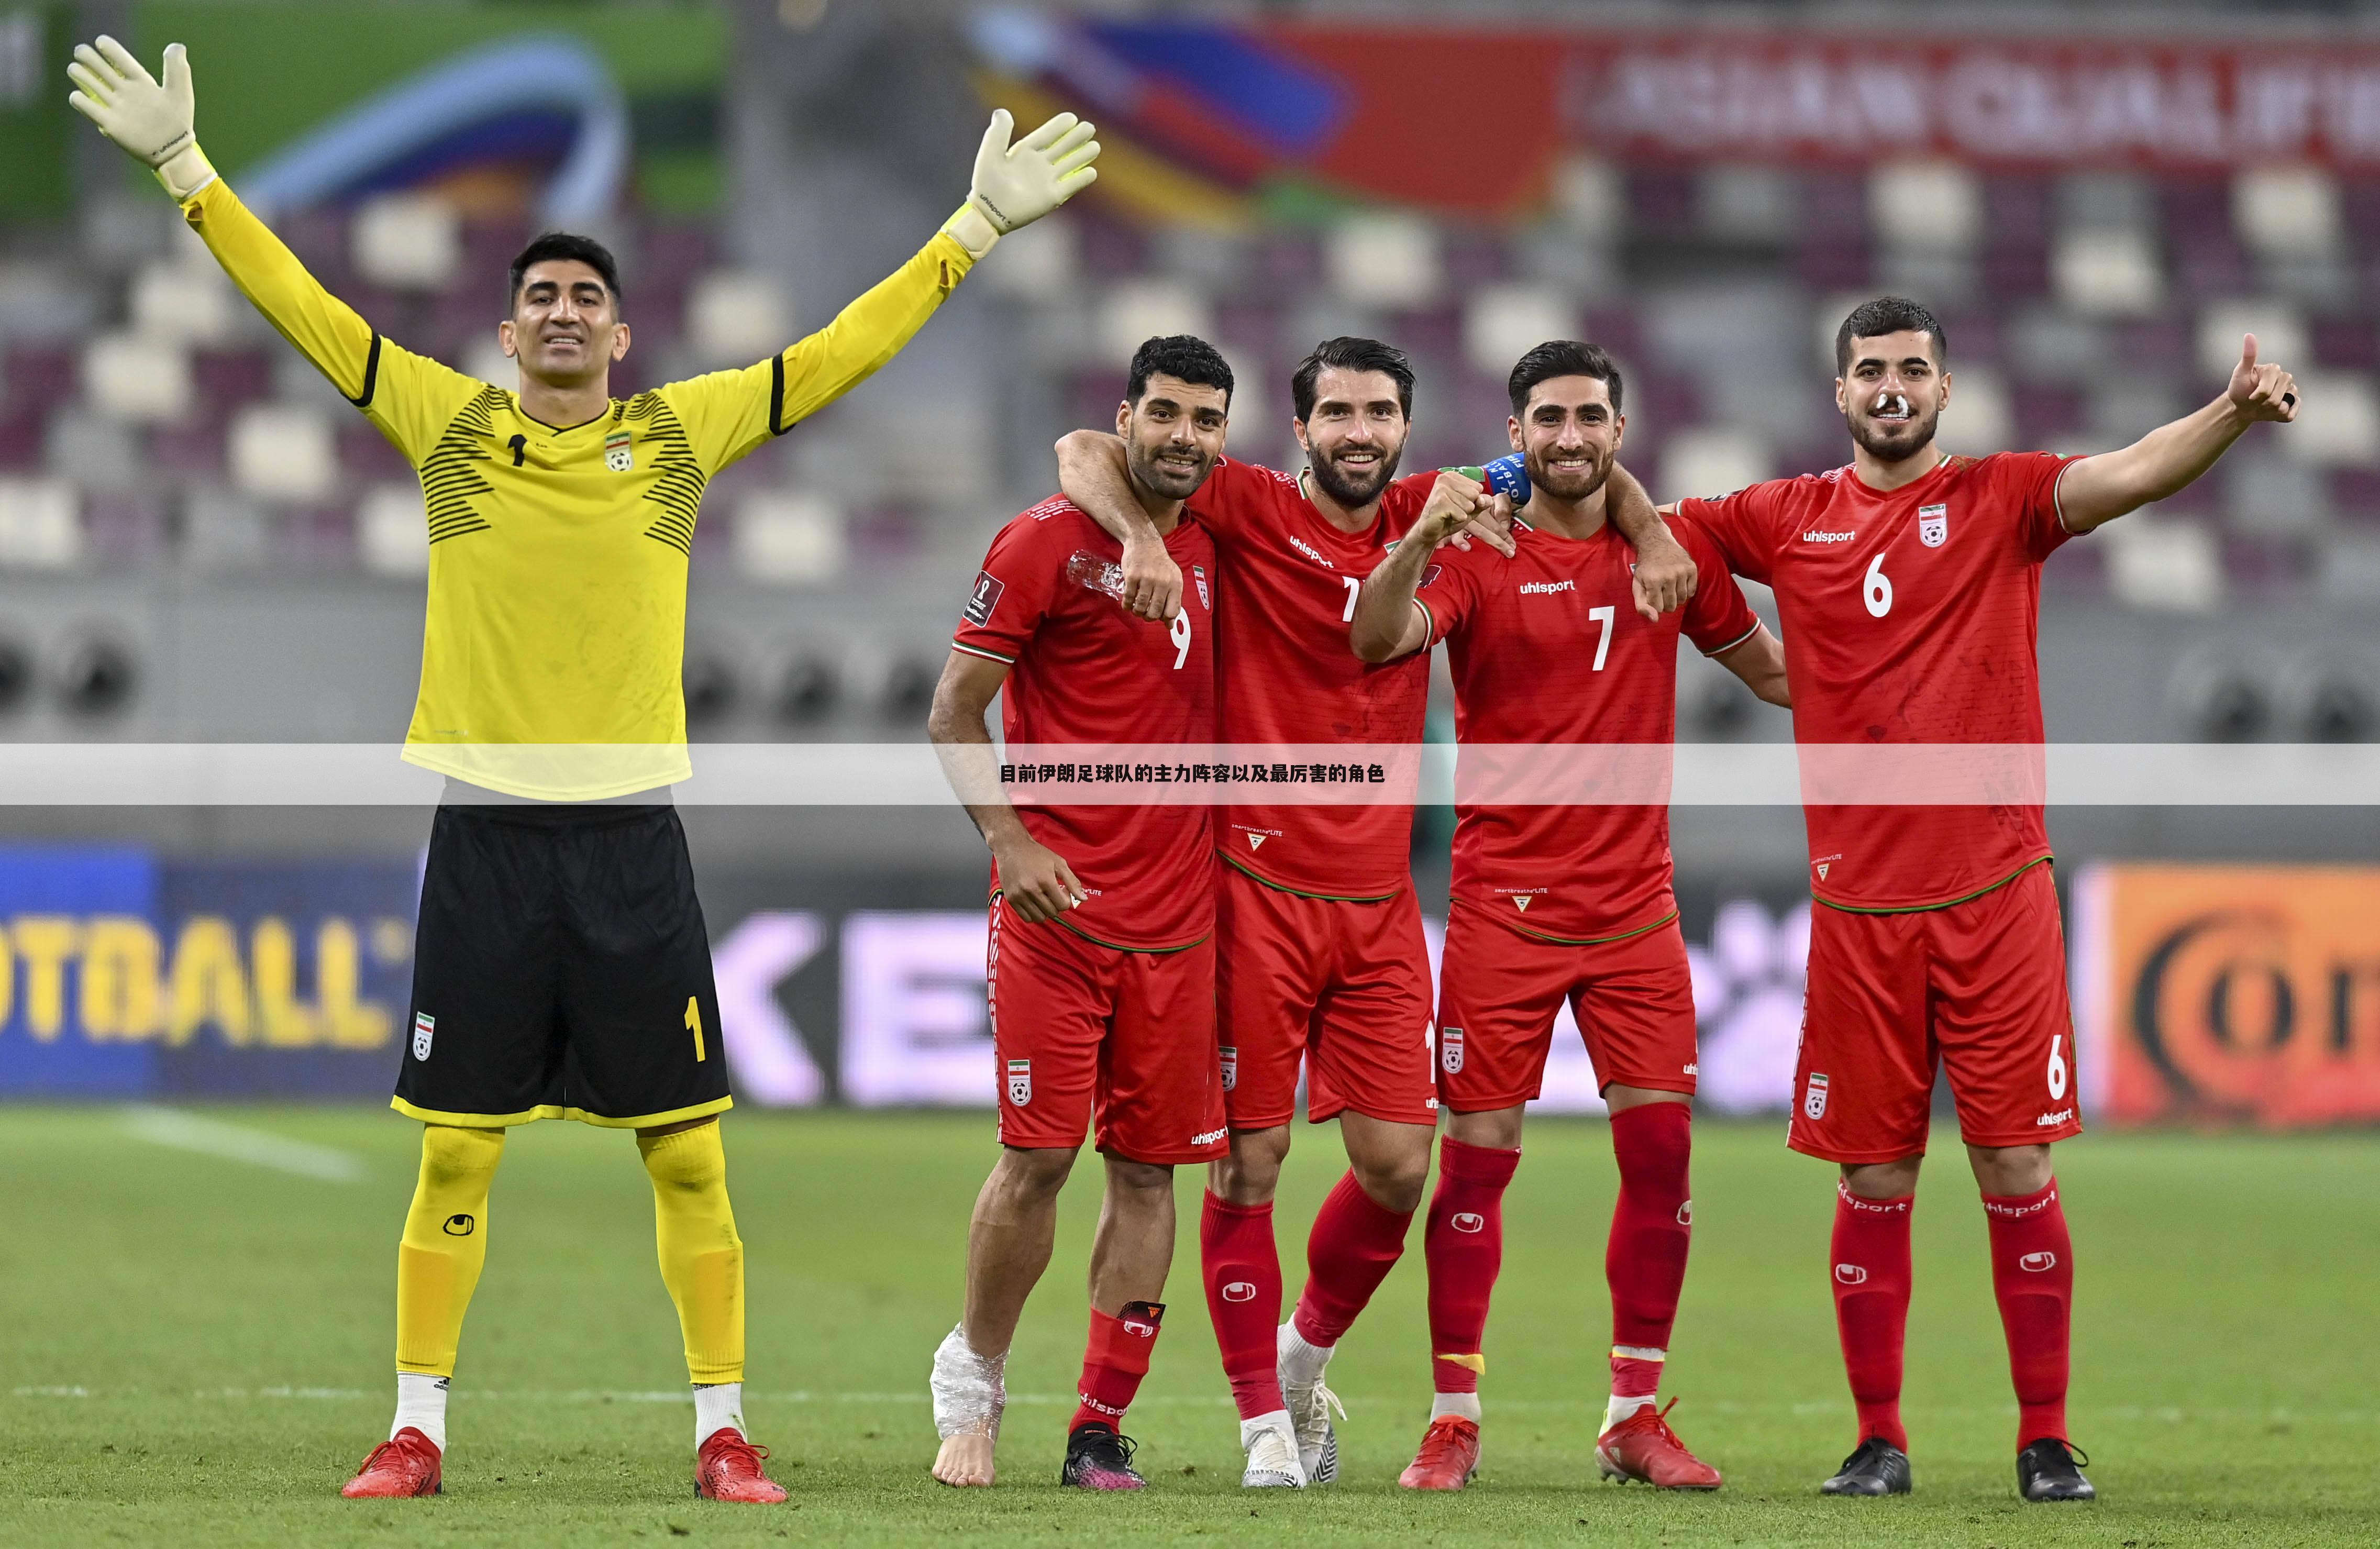 目前伊朗足球队的主力阵容以及最厉害的角色